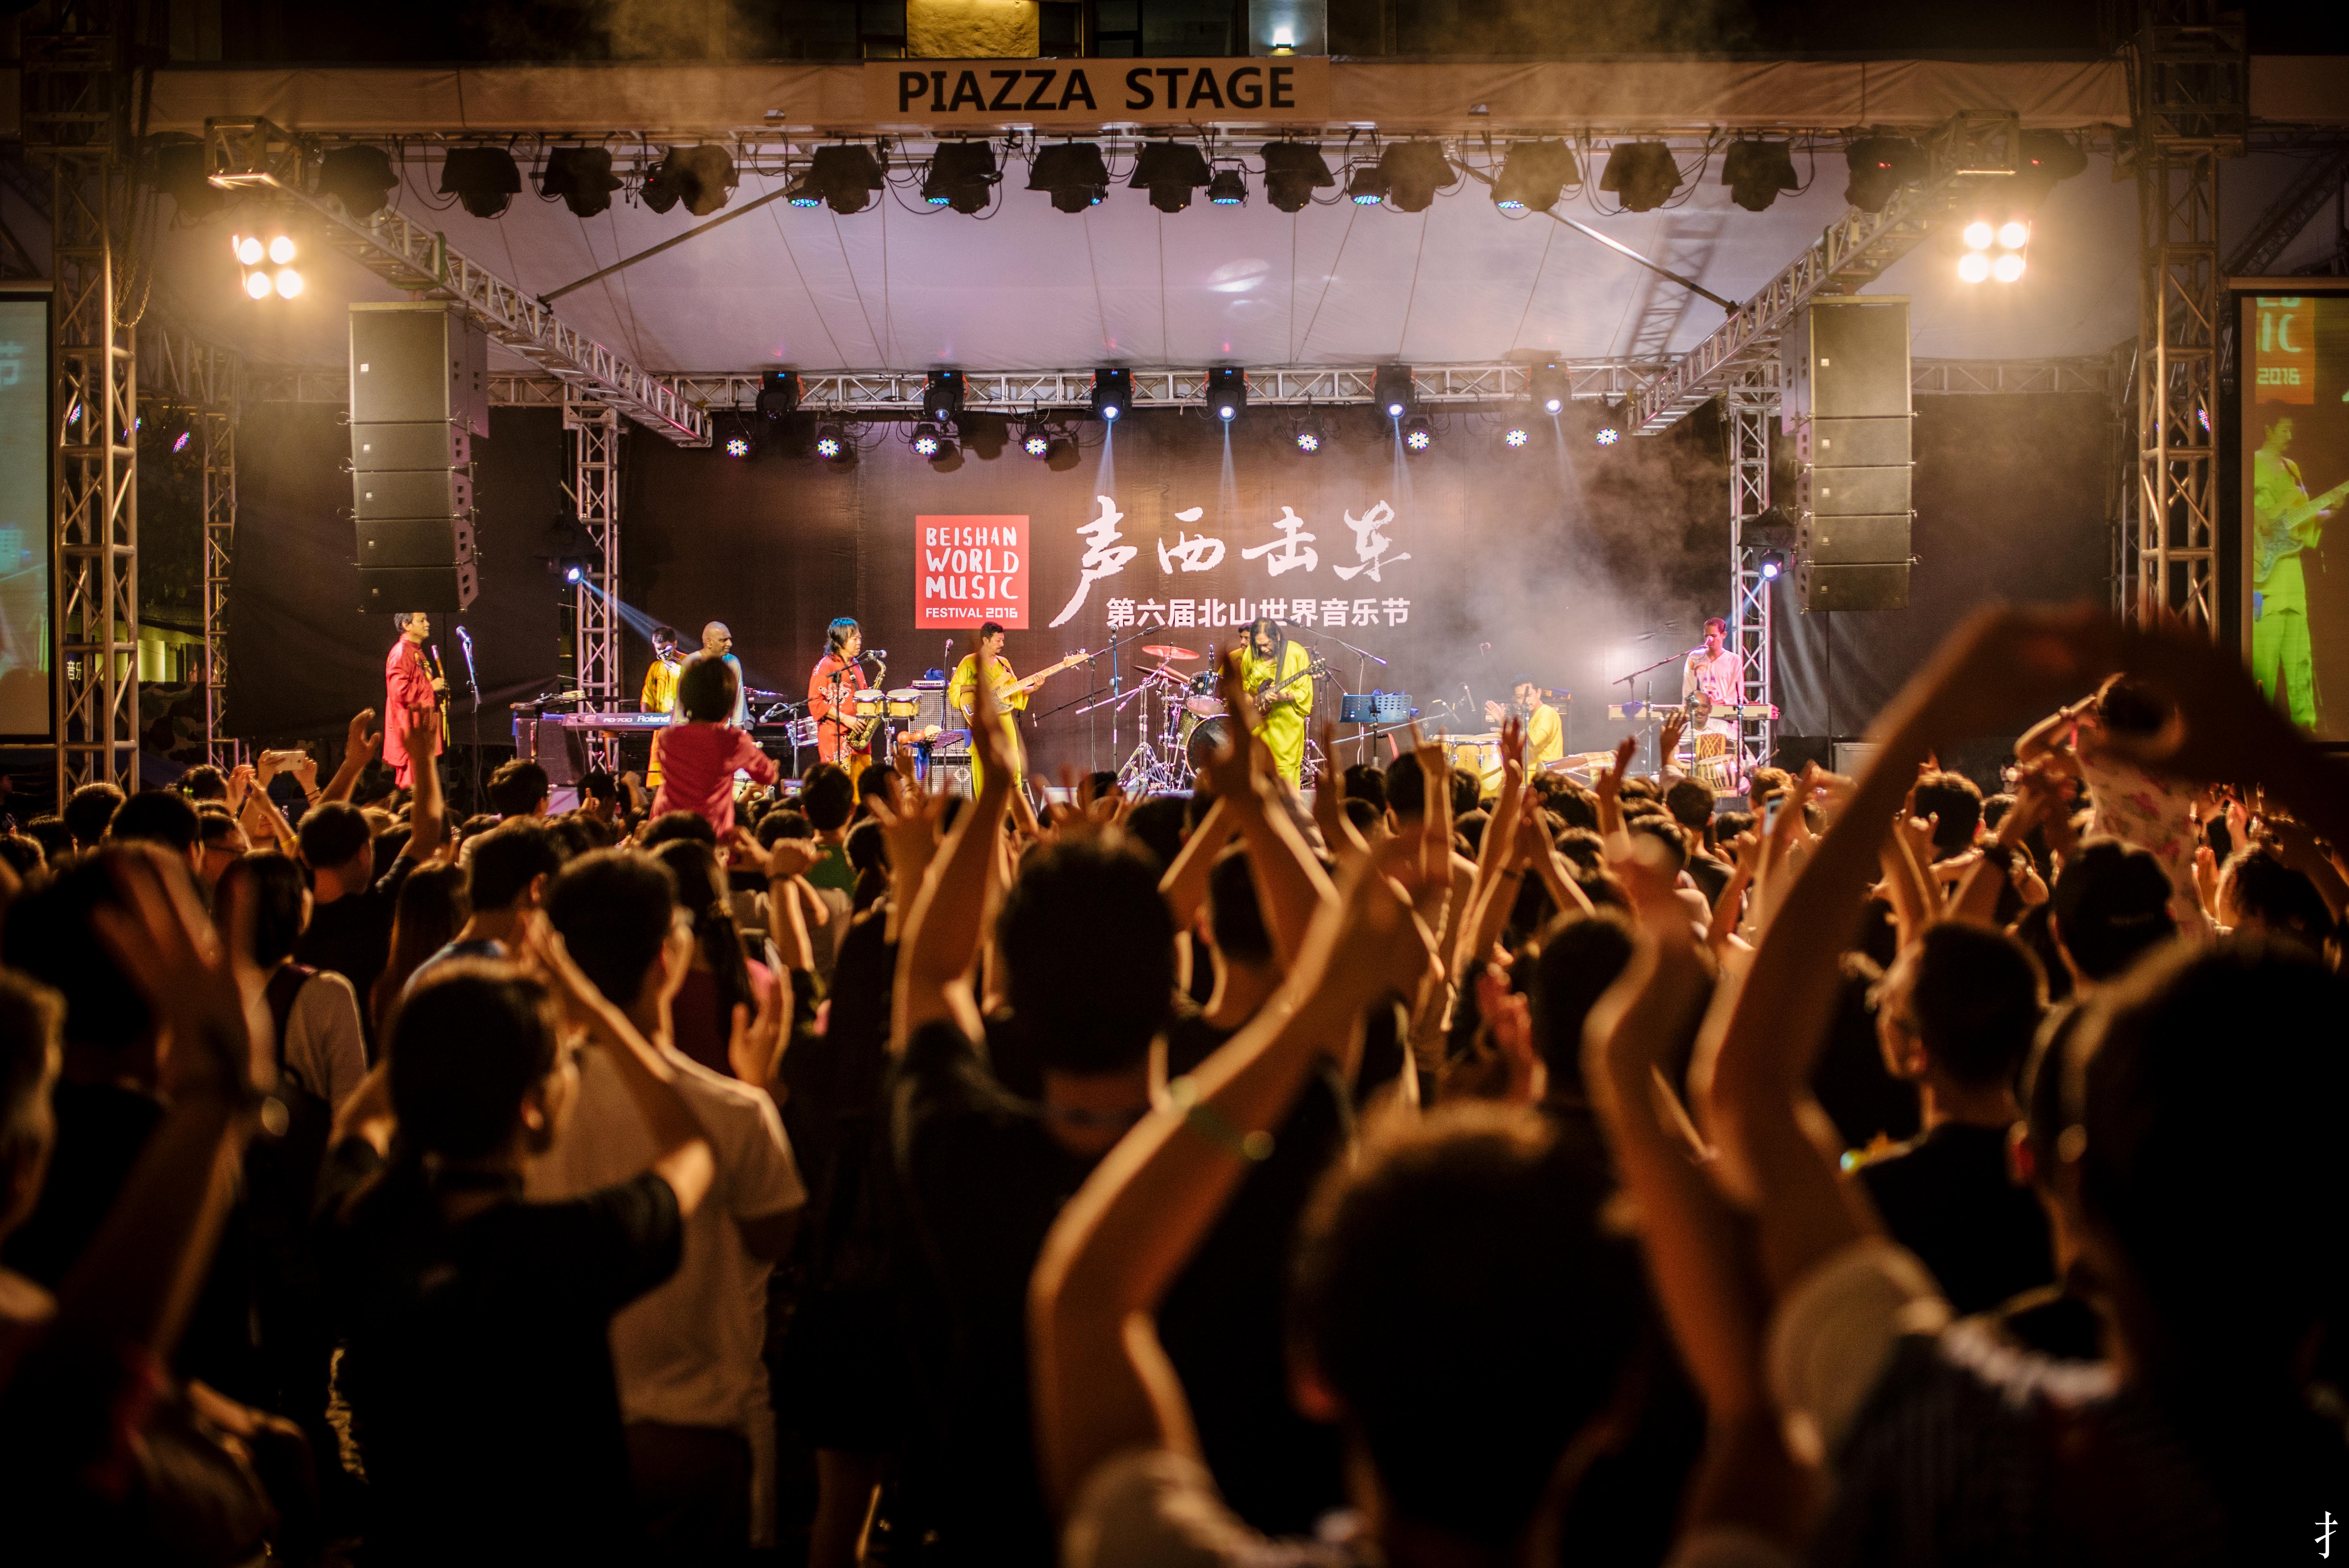 珠海北山世界音乐节,与你一同乐不宜迟